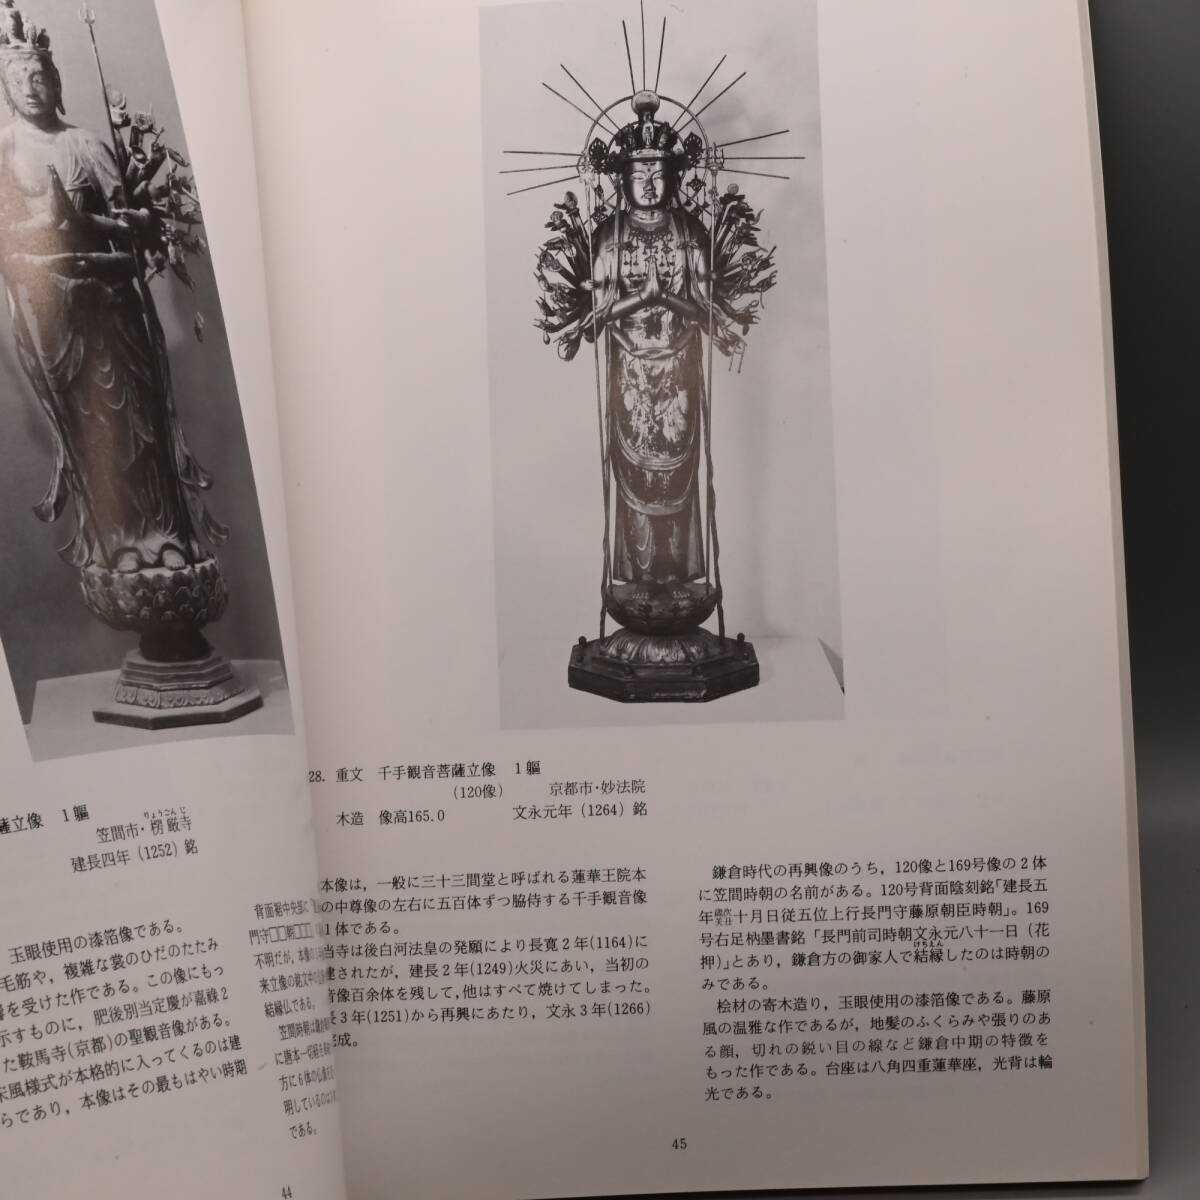 〇0557 「祈りの造形　下野の仏像　栃木県立博物館 1989」仏像 佛像 宗教 雕塑 彫塑 仏教 佛教_画像5